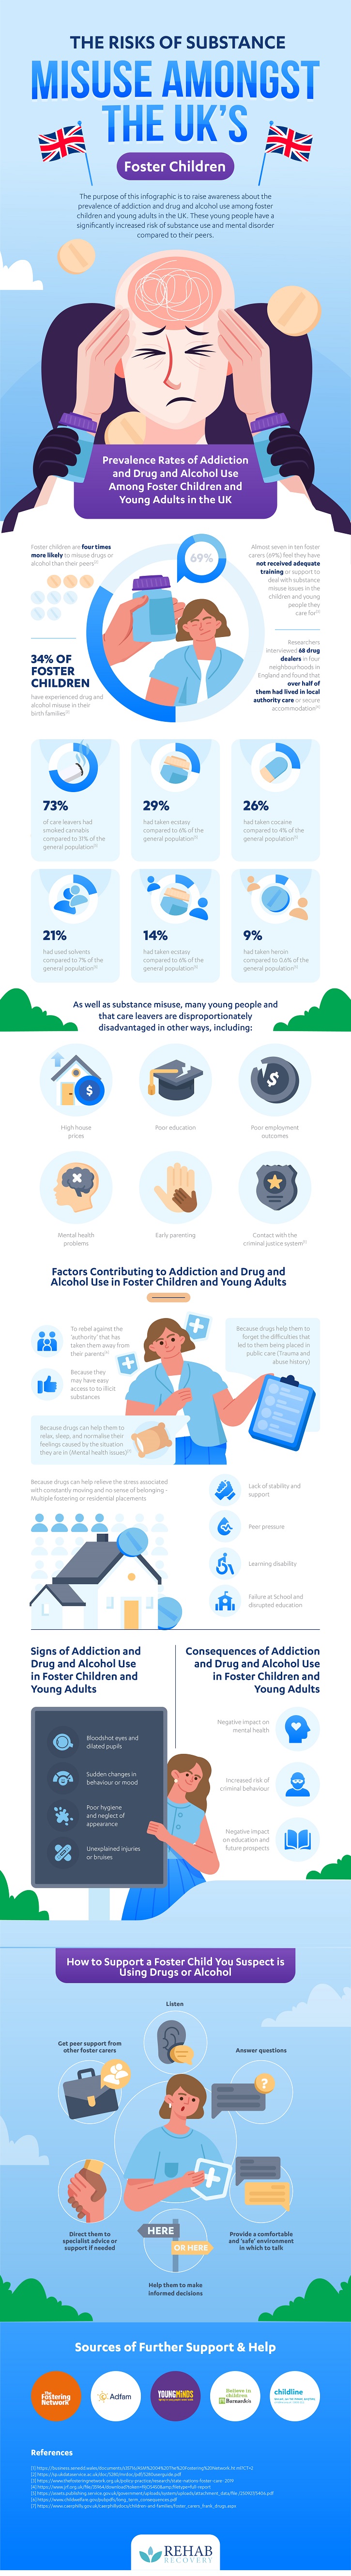 Risk of substance misuse amongst UK foster children infographic